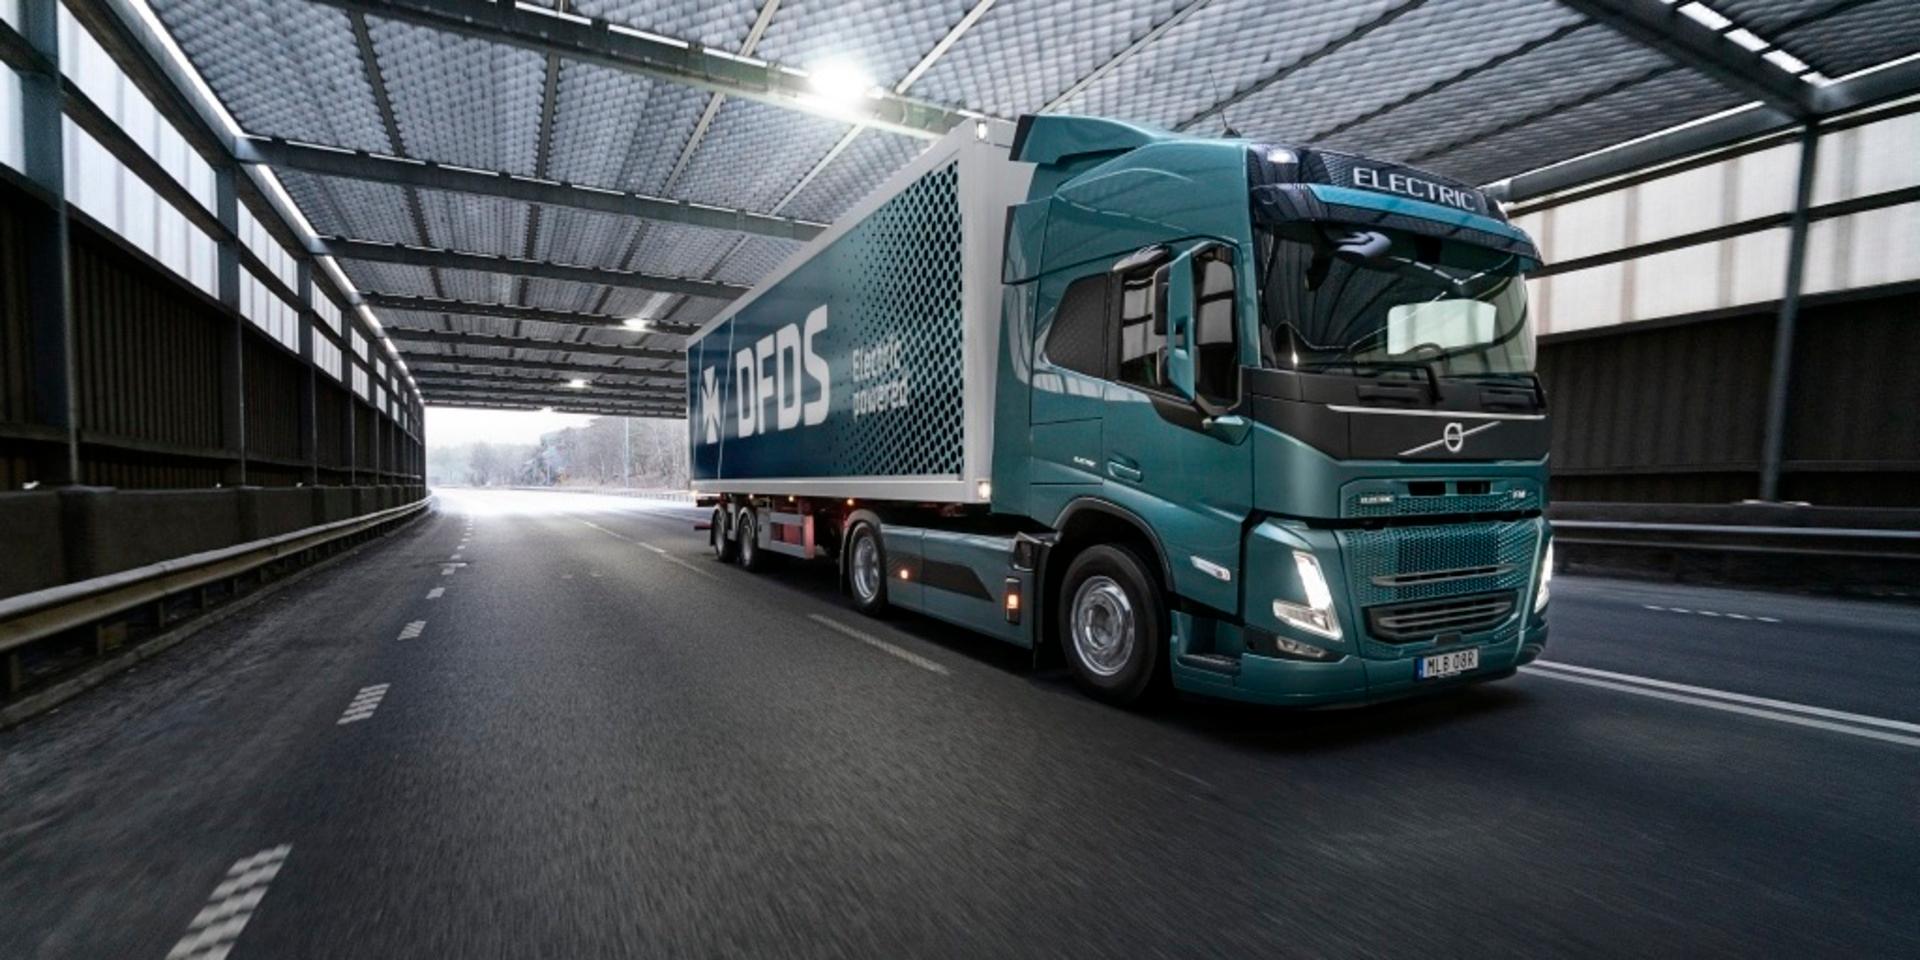 Rederi- och logistikföretaget DFDS beställer 100 tunga FM Electric av Volvo Lastvagnar. Bild: Volvo Trucks